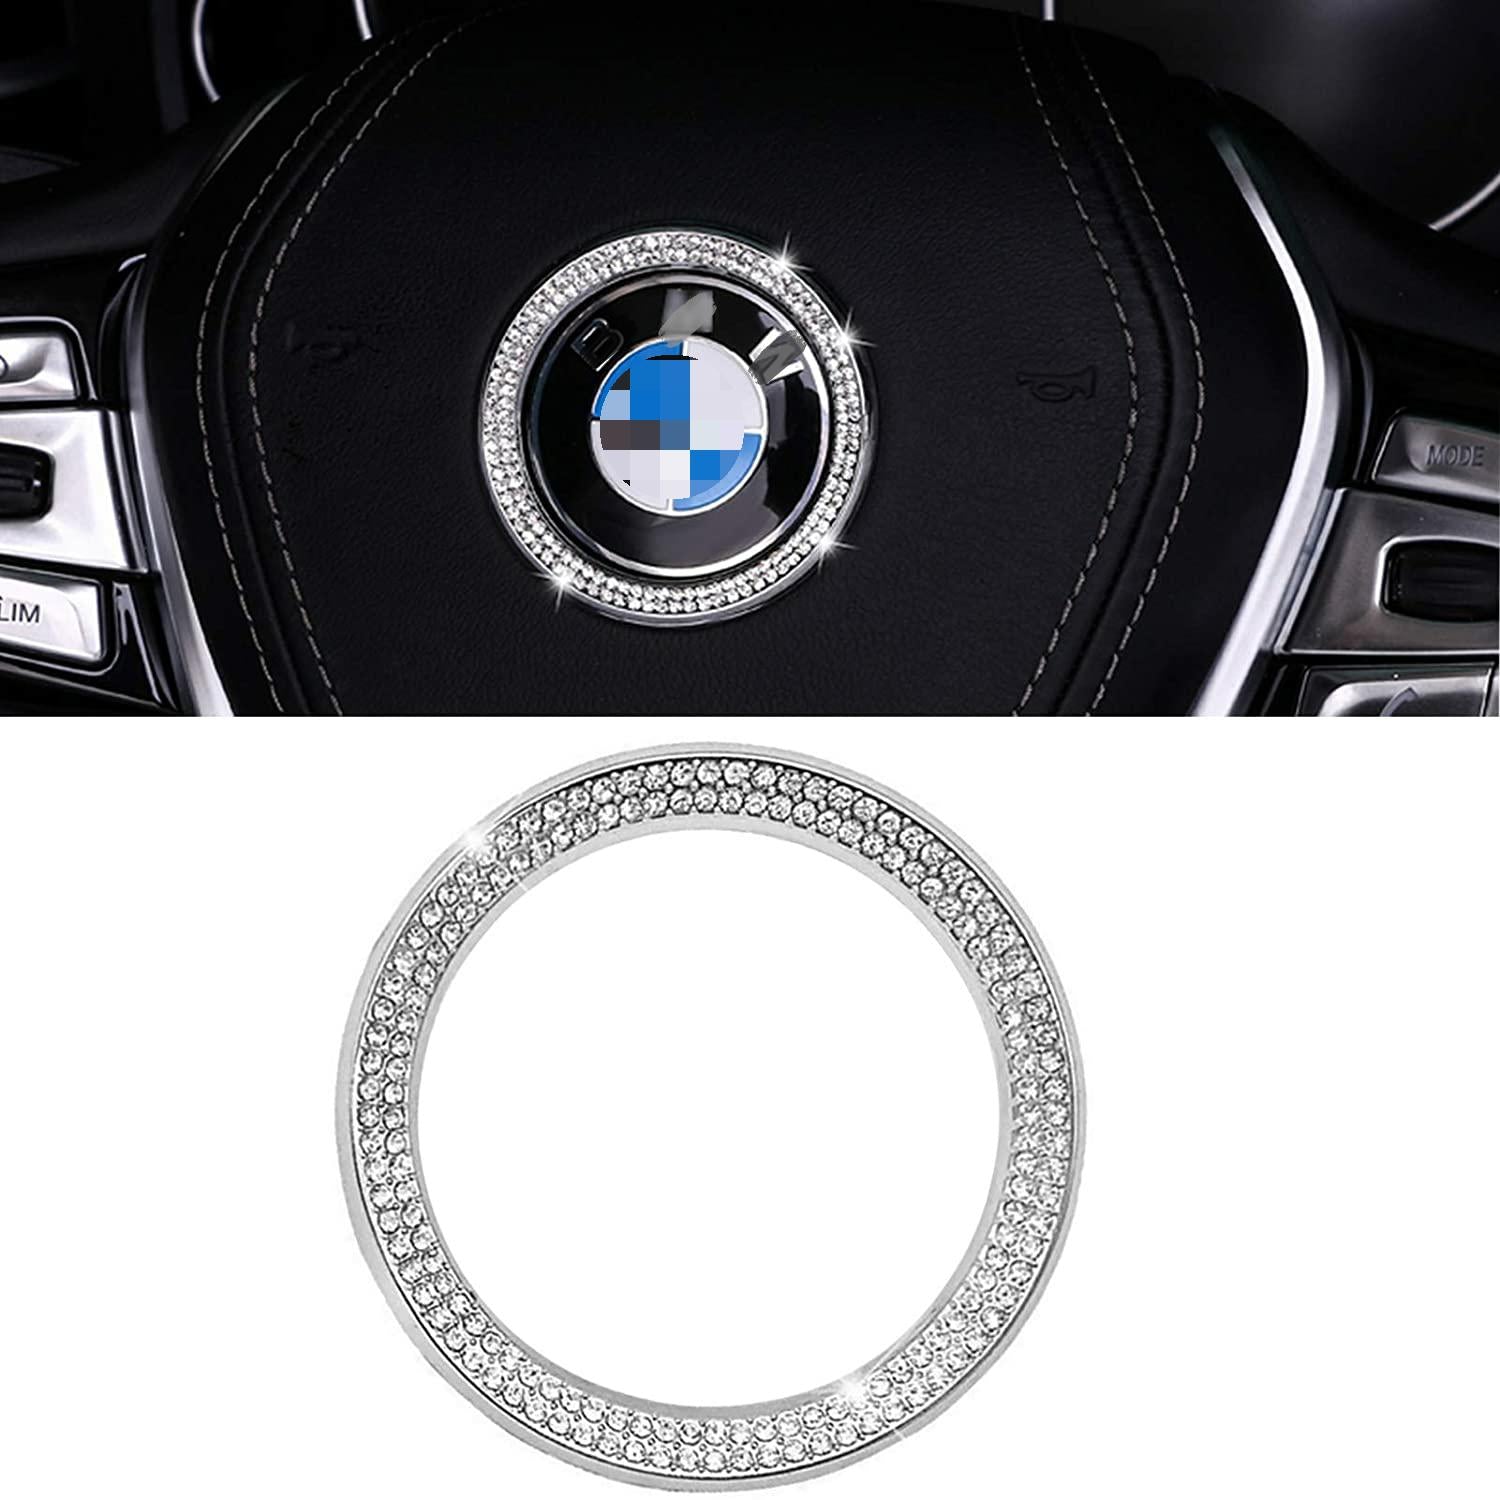 For BMW Steering Wheel Emblem - Crystal Bling